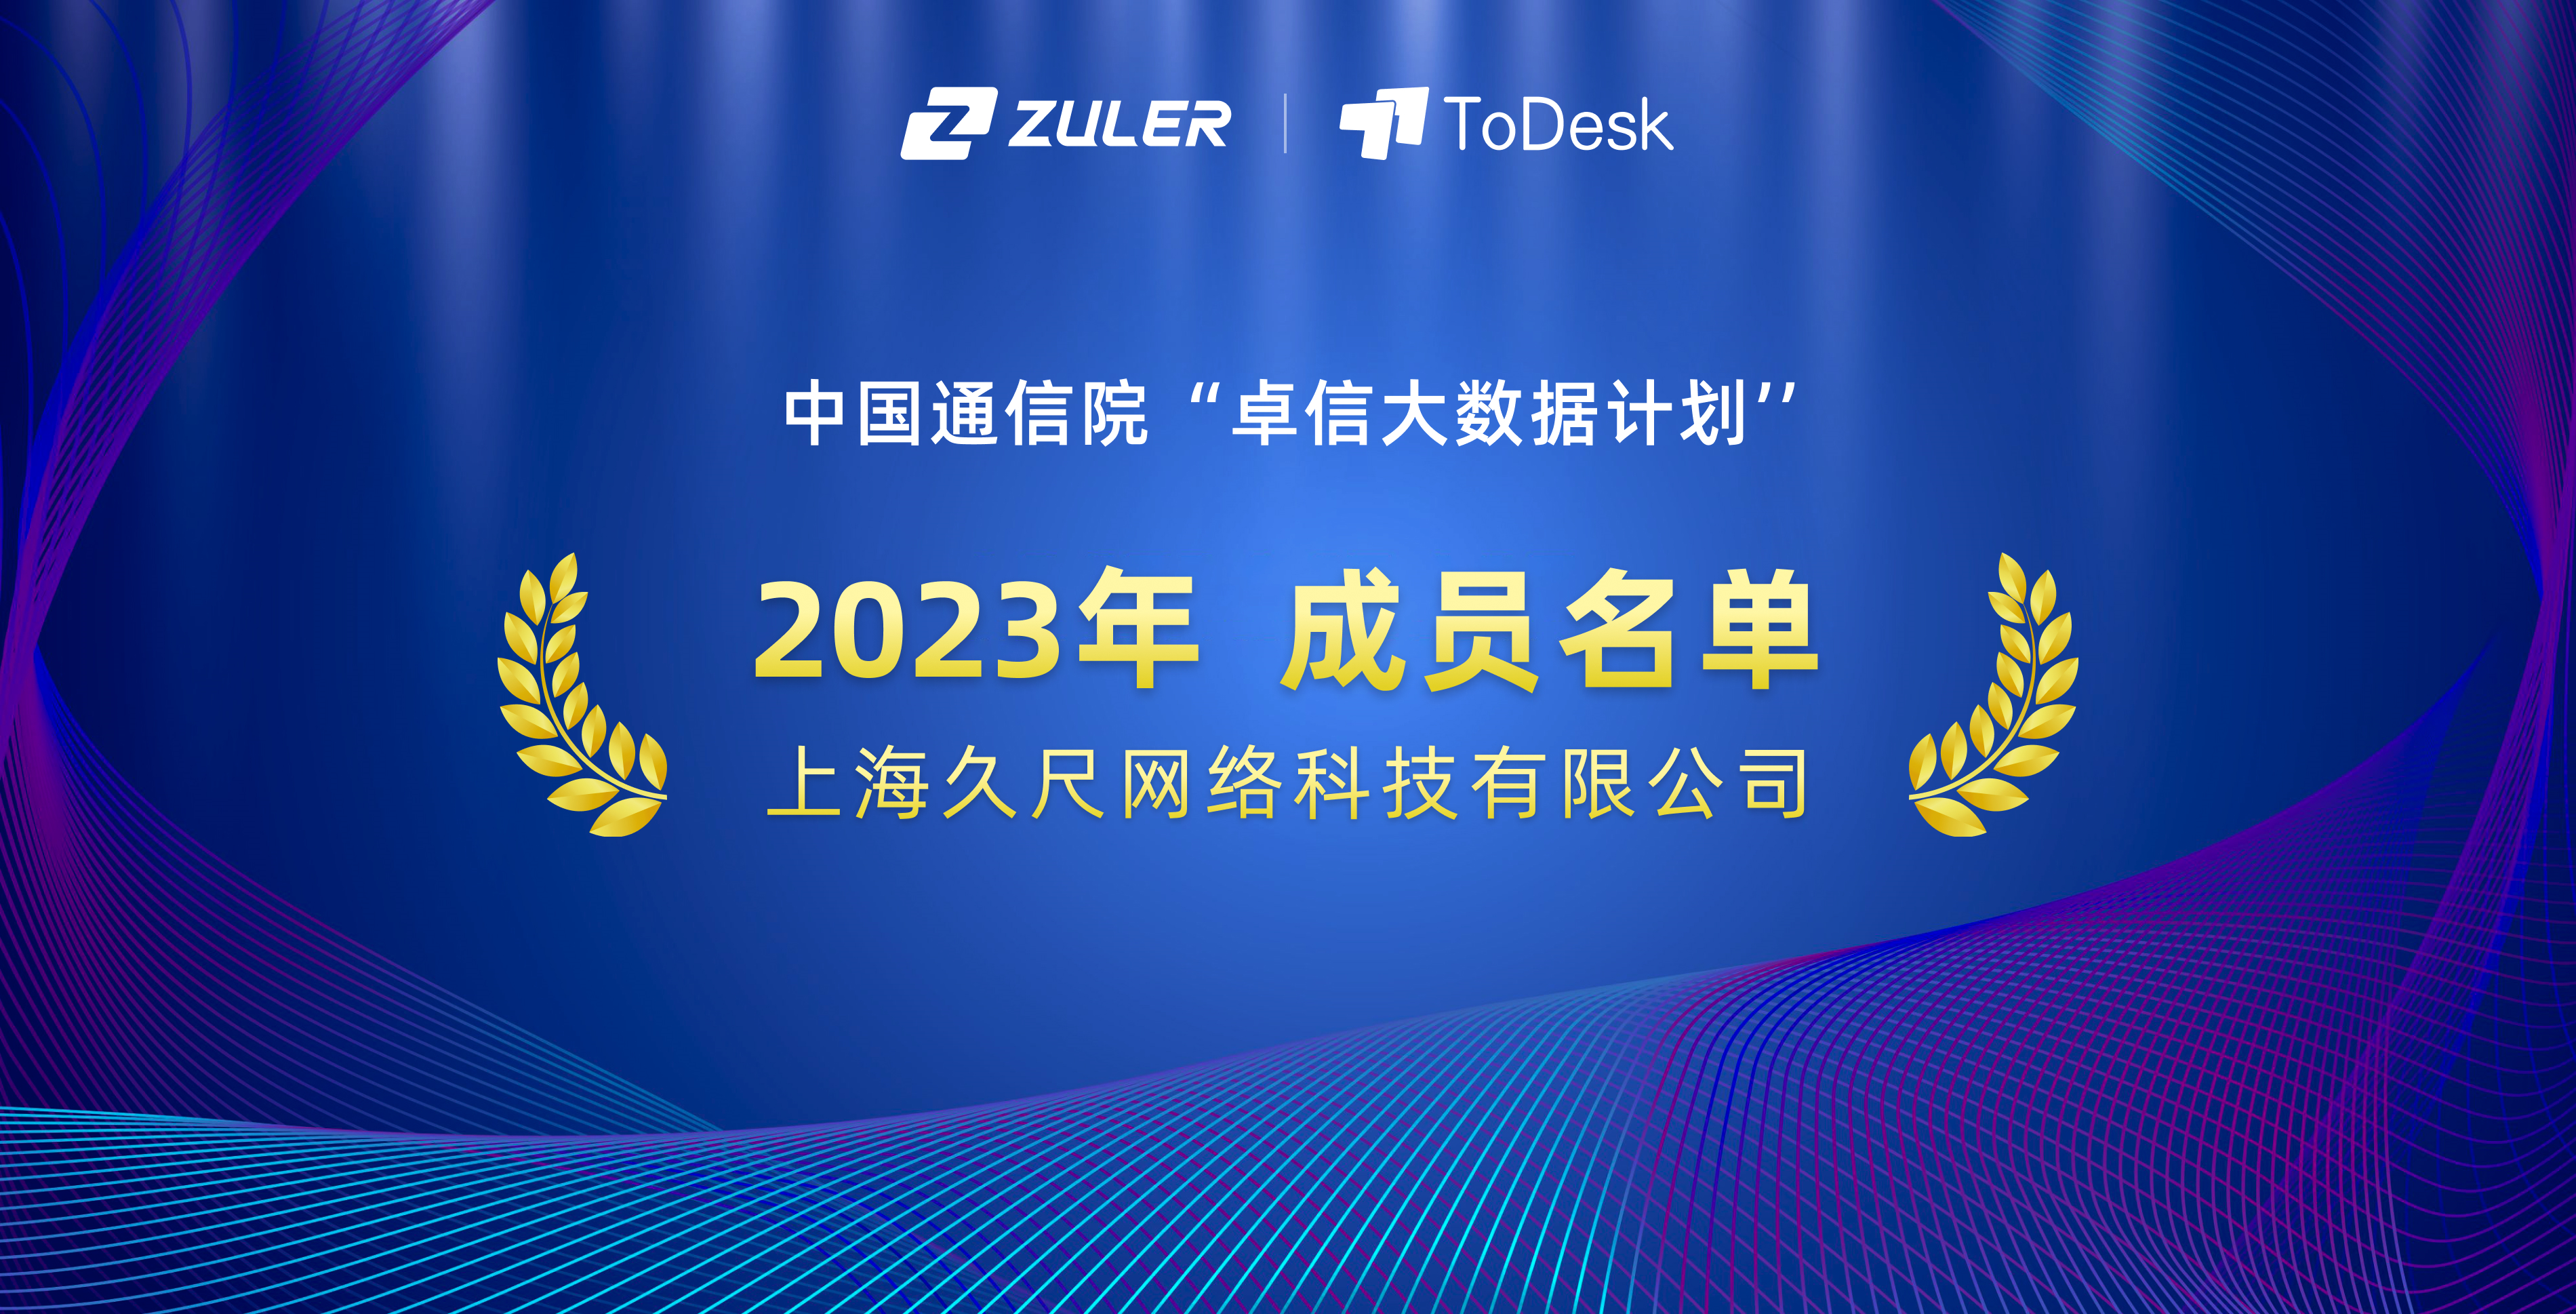 祝贺！Zuler入选中国信通院“卓信大数据计划”成员单位